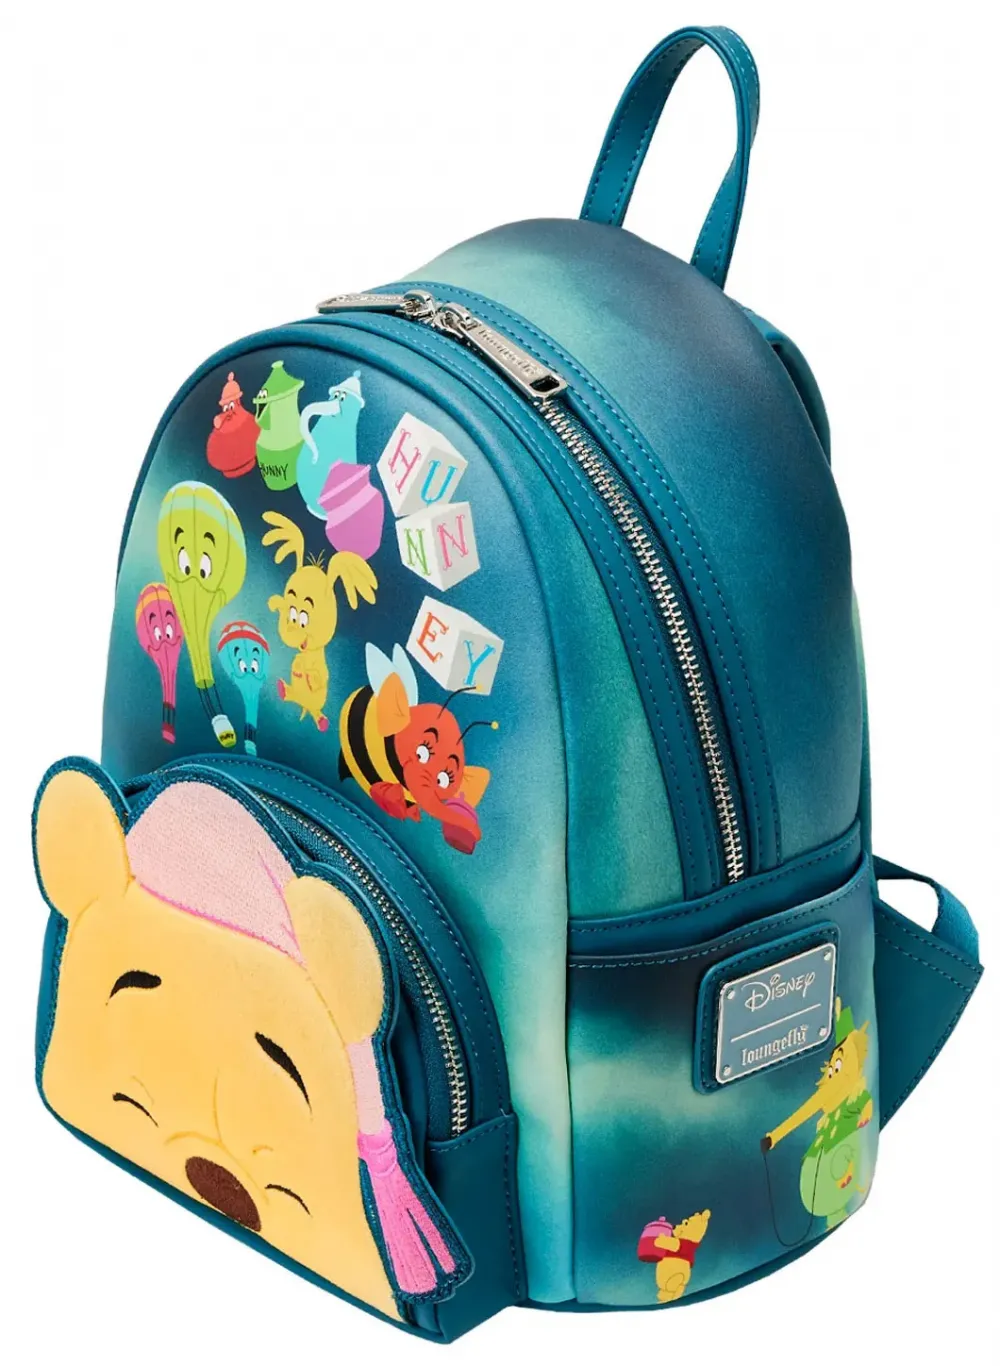 Winnie the Pooh Heffa-Dream Glow Mini Backpack Loungefly